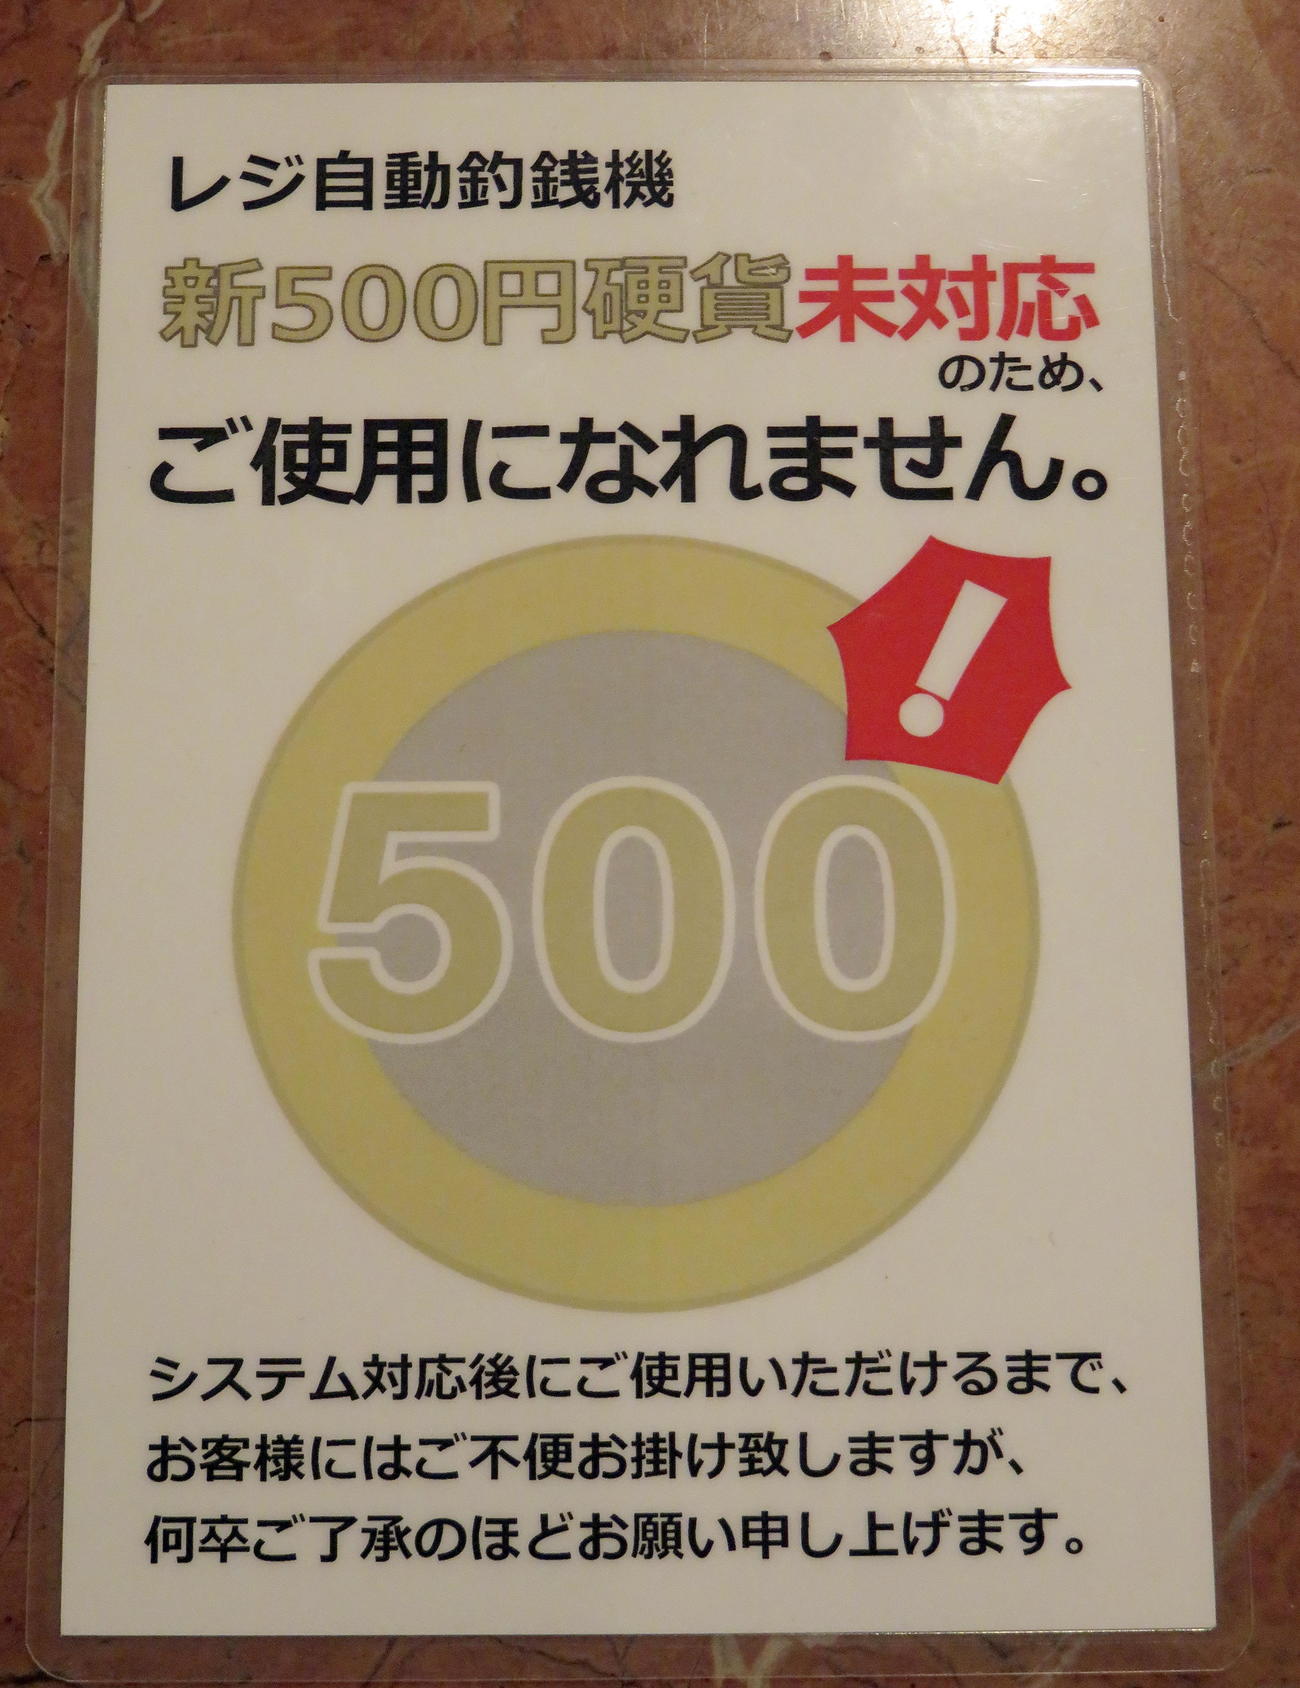 ライブコーヒー築地店で作成した新500円硬貨未対応の通知（撮影・鎌田直秀）